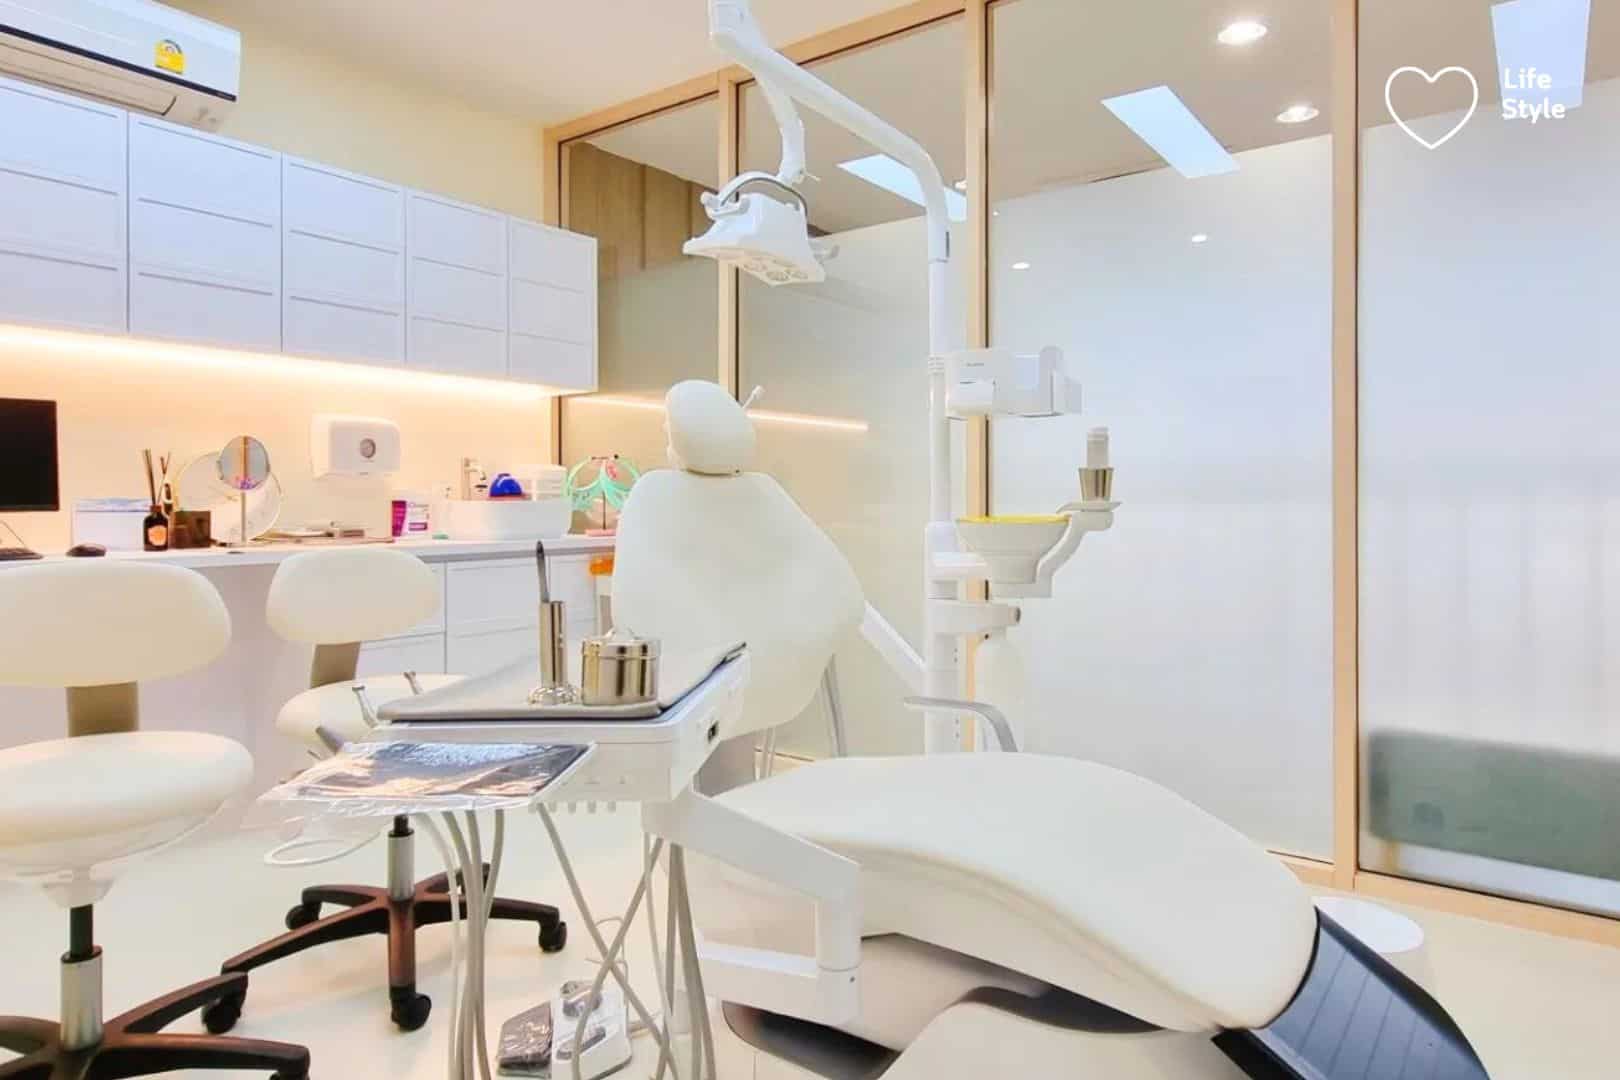 ทำวีเนียร์ที่ไหนดี-วีเนียร์ ราคา-วีเนียร์ ฟัน-วีเนียร์ฟัน ราคา-วีเนียร์ฟัน คือ-วีเนียร์ มีกี่แบบ-วีเนียร์ ซี่ละ-วีเนียร์ เซรามิก ราคา-ทําวีเนียร์ ราคา-dental-dental clinic-คลินิกฟันใกล้ฉัน-dental bangkok-วีเนียร์คอมโพสิต ราคา-ทันตกรรม-ศูนย์ทันตกรรม-ฟันสวย-ฟันขาว-ฟอกสีฟัน-ฟอกสีฟันราคา-ฟอกสีฟันที่ไหนดี